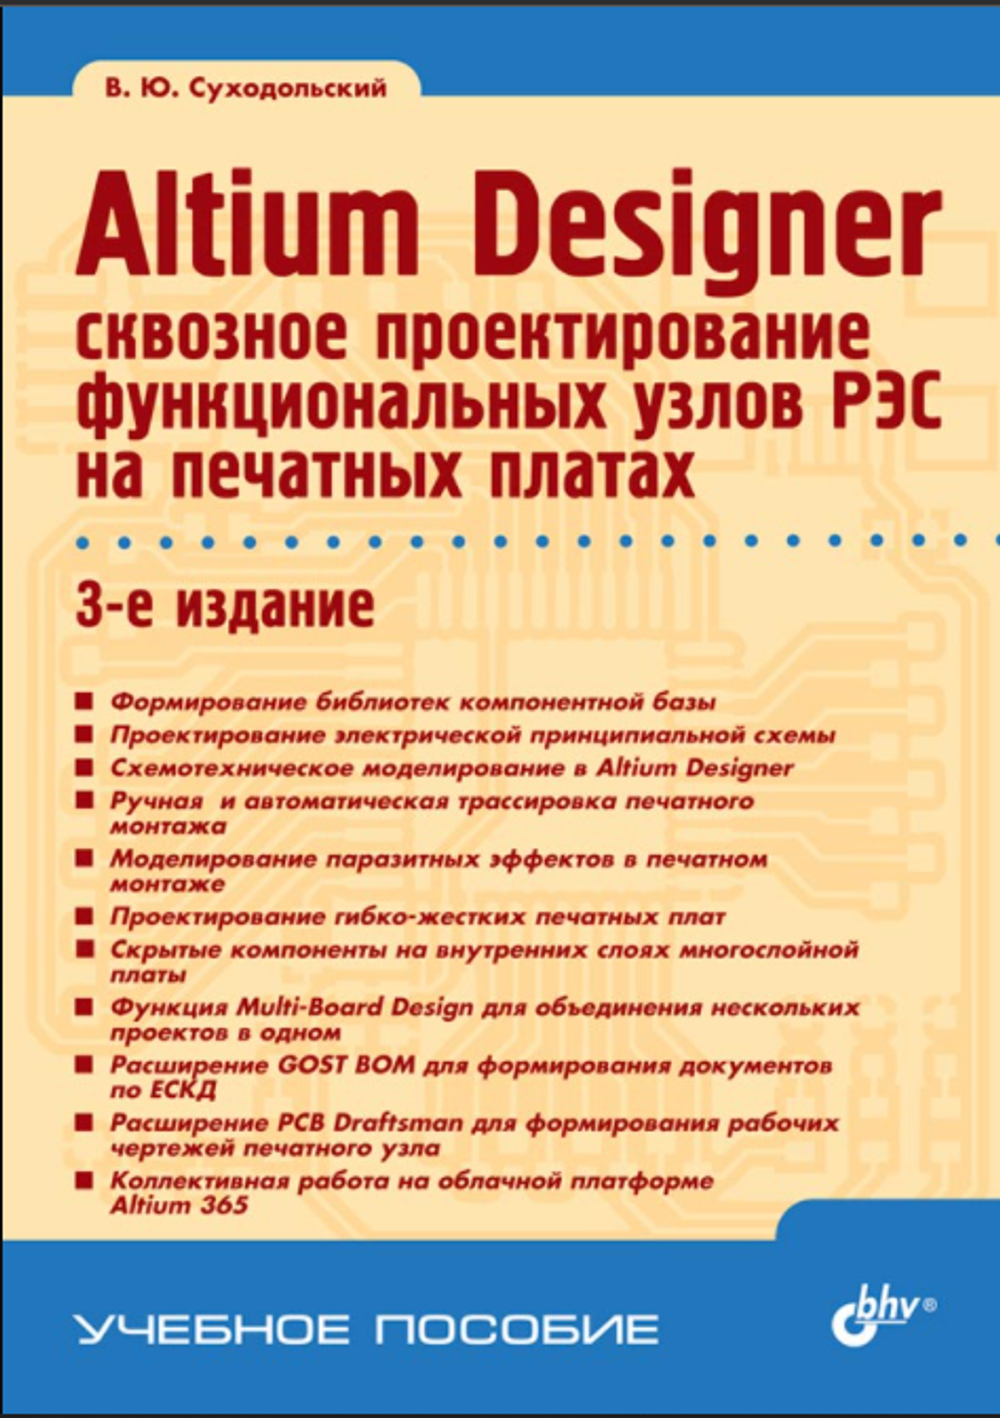 Книга: Суходольский В.Ю. "Altium Designer: сквозное проектирование функциональных узлов РЭС на печатных платах. 3-е изд."